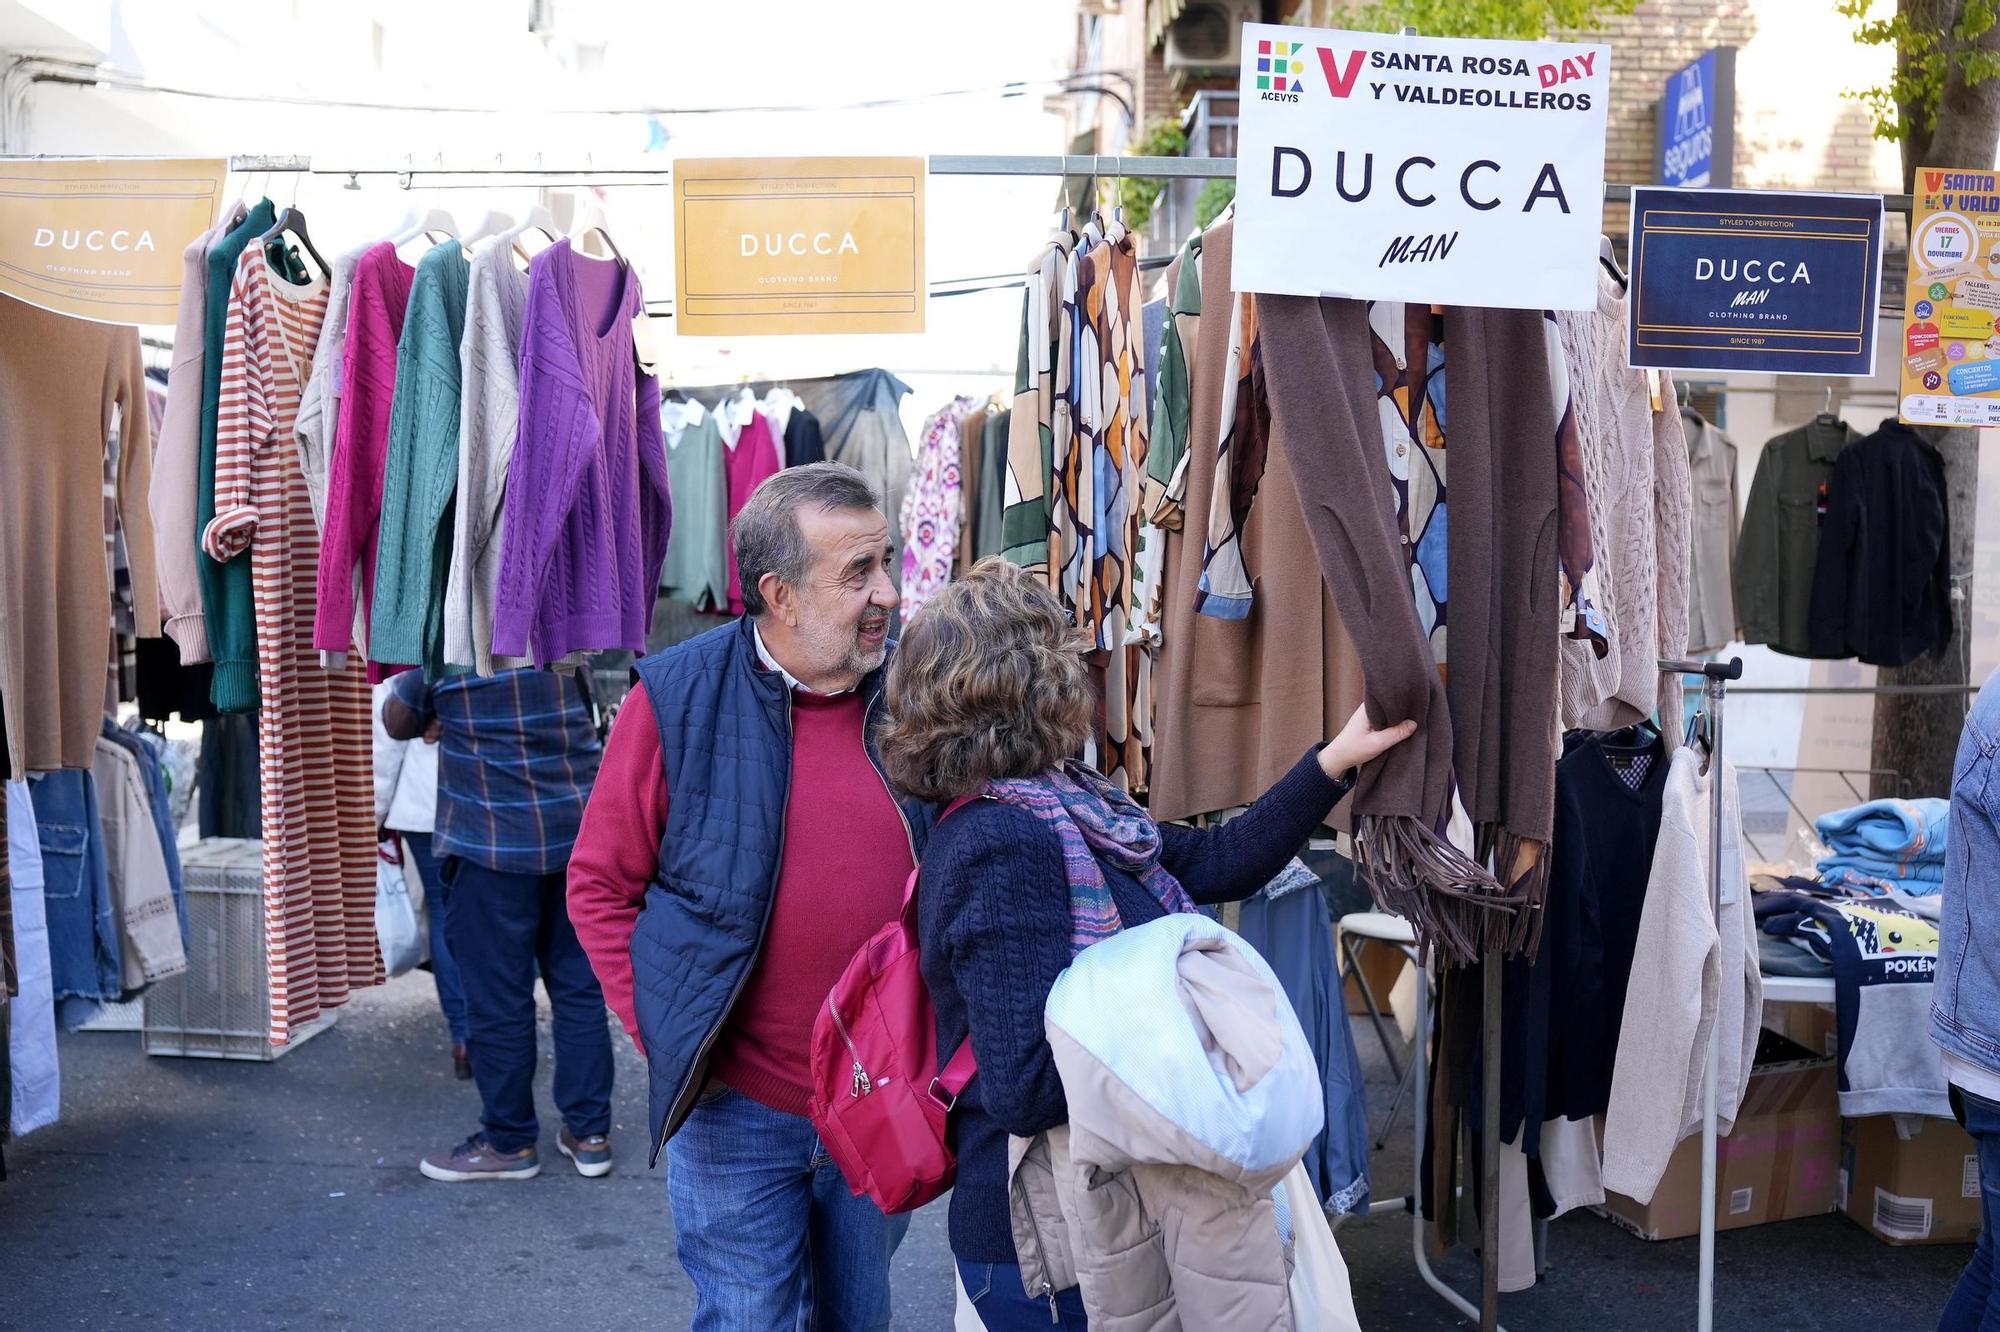 Santa Rosa y Valdeolleros sacan sus comercios a la calle